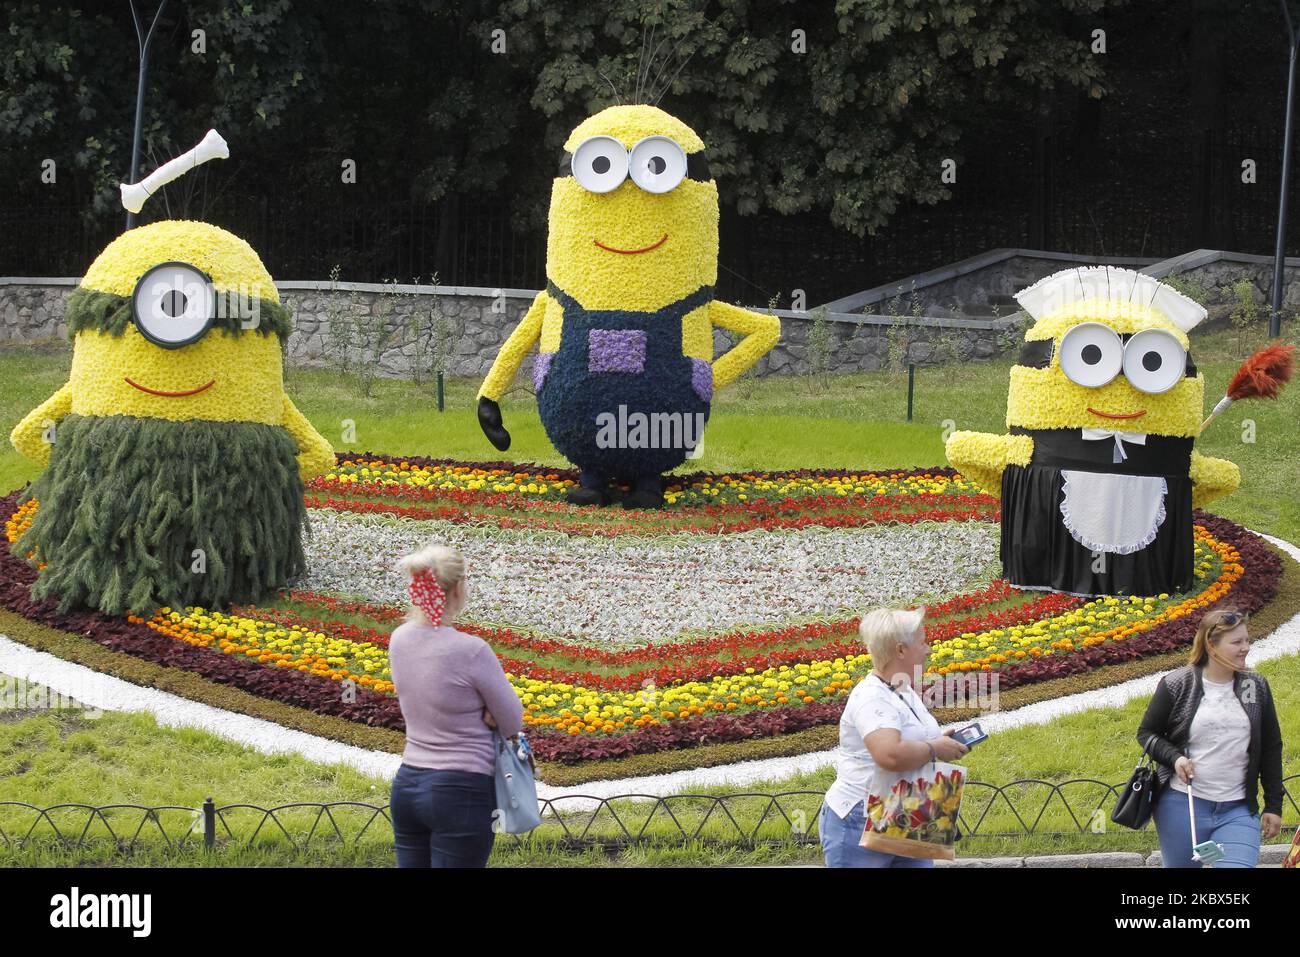 Les visiteurs se promongent devant les personnages de dessins animés géants Minions faits de fleurs lors du spectacle de fleurs « Cartoon-Land » qui s'ouvre à Kiev, en Ukraine, le 14 août 2020. Plus de 300 mille fleurs ont été utilisées pour créer des personnages de dessins animés géants à partir de dessins célèbres. (Photo par STR/NurPhoto) Banque D'Images